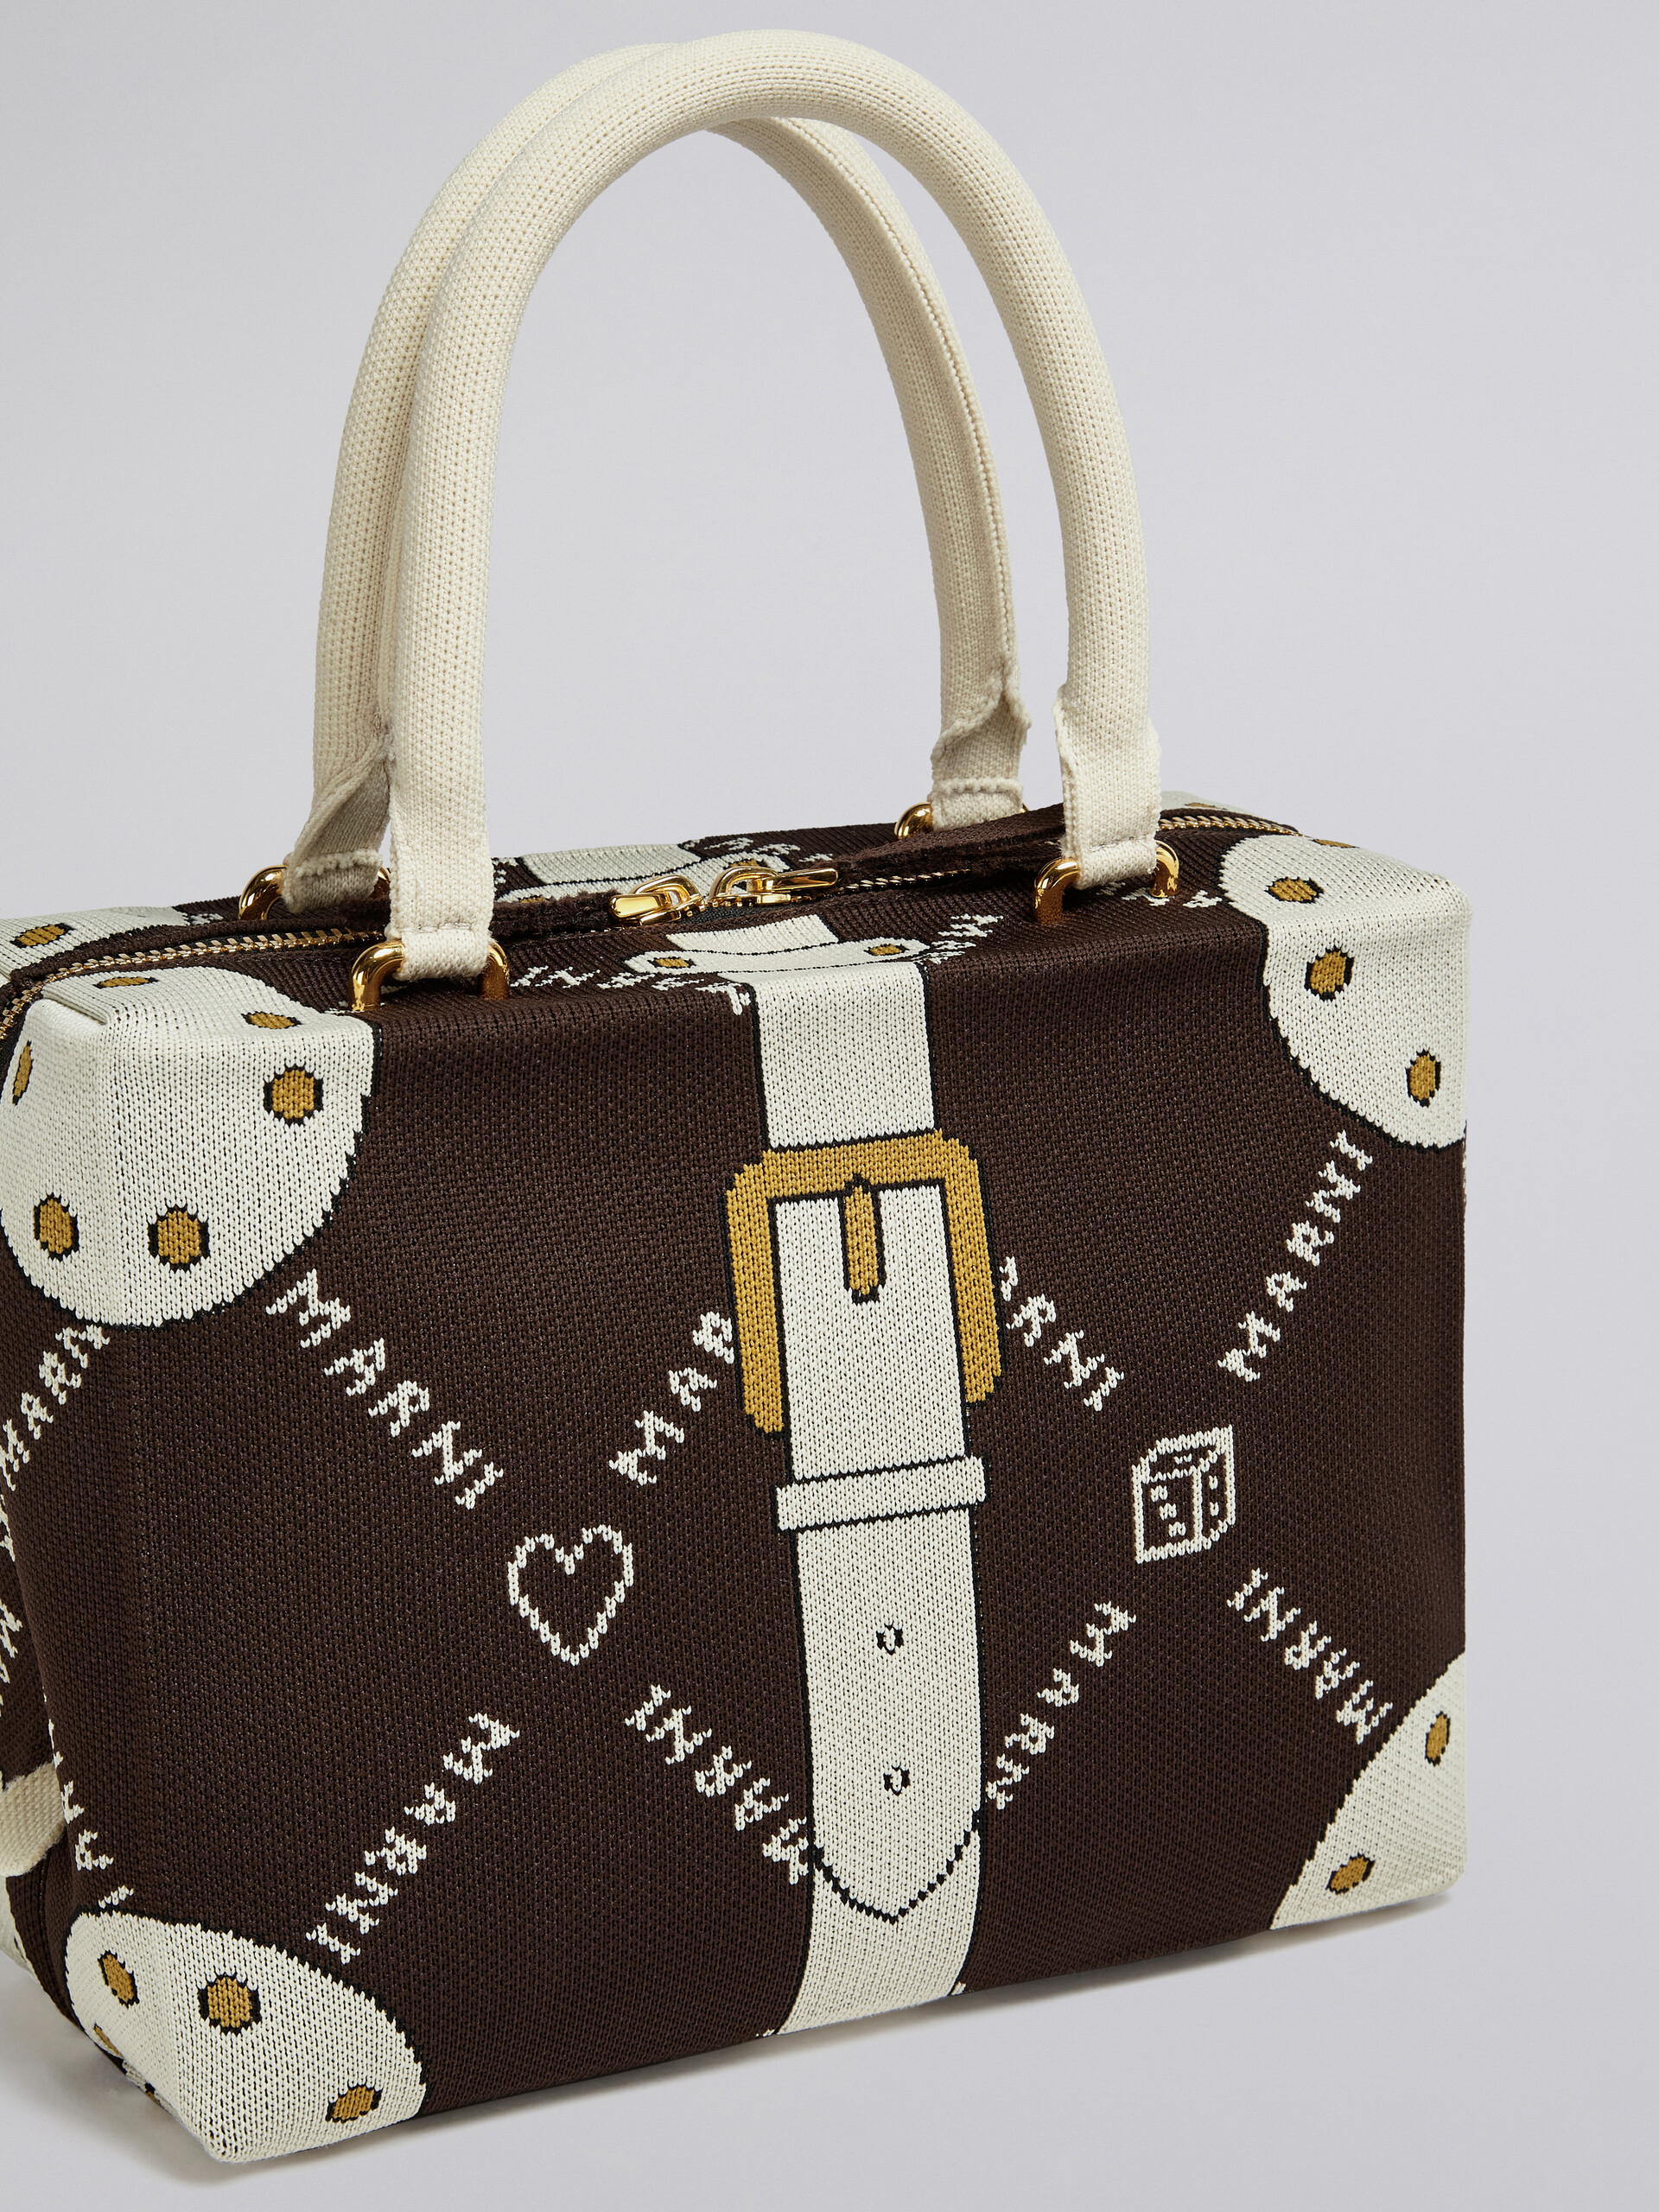 CUBIC bag in brown Marnigram trompe-l'œil jacquard - Handbag - Image 5